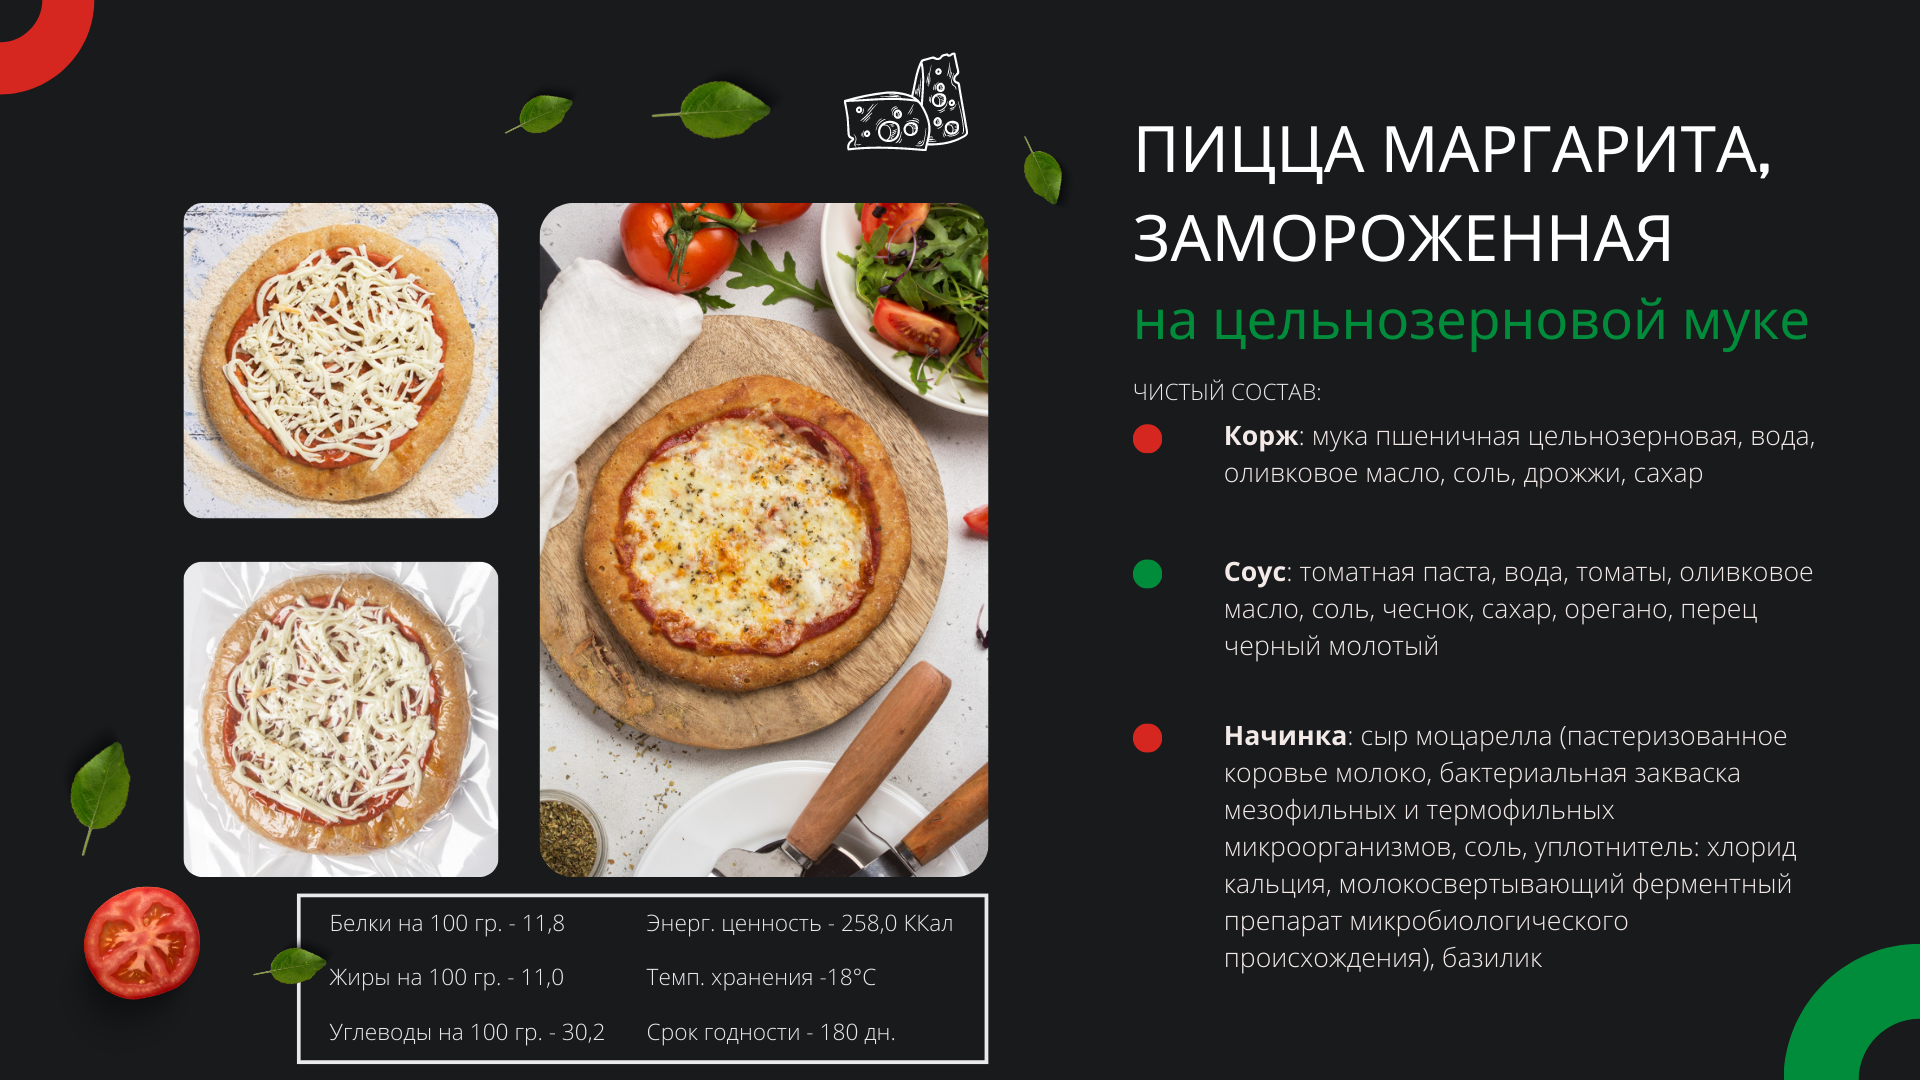 технологическая карта на пиццу пепперони фото 95